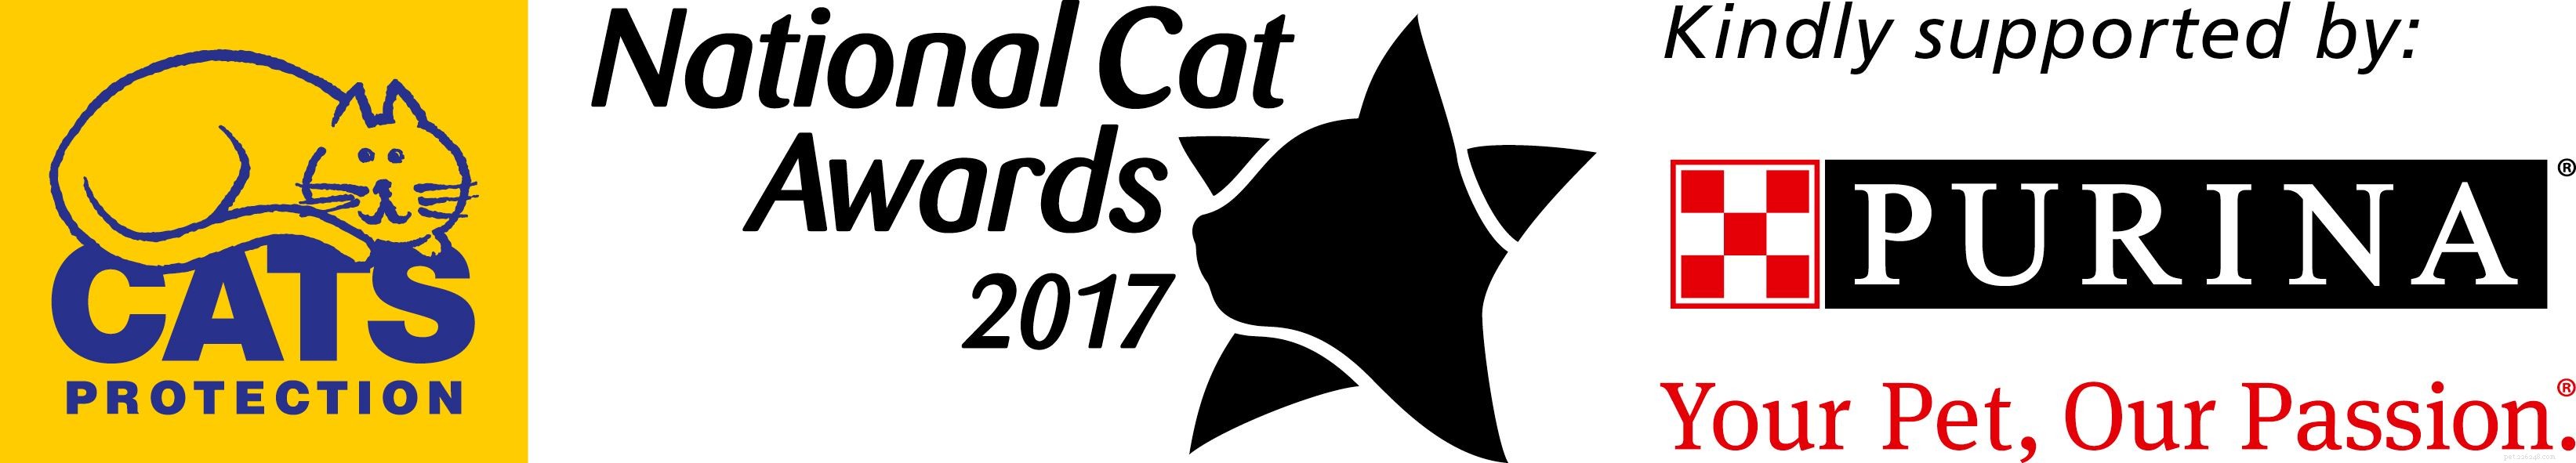 Incontra i finalisti della categoria Outstanding Rescue Cat ai National Cat Awards 2017!